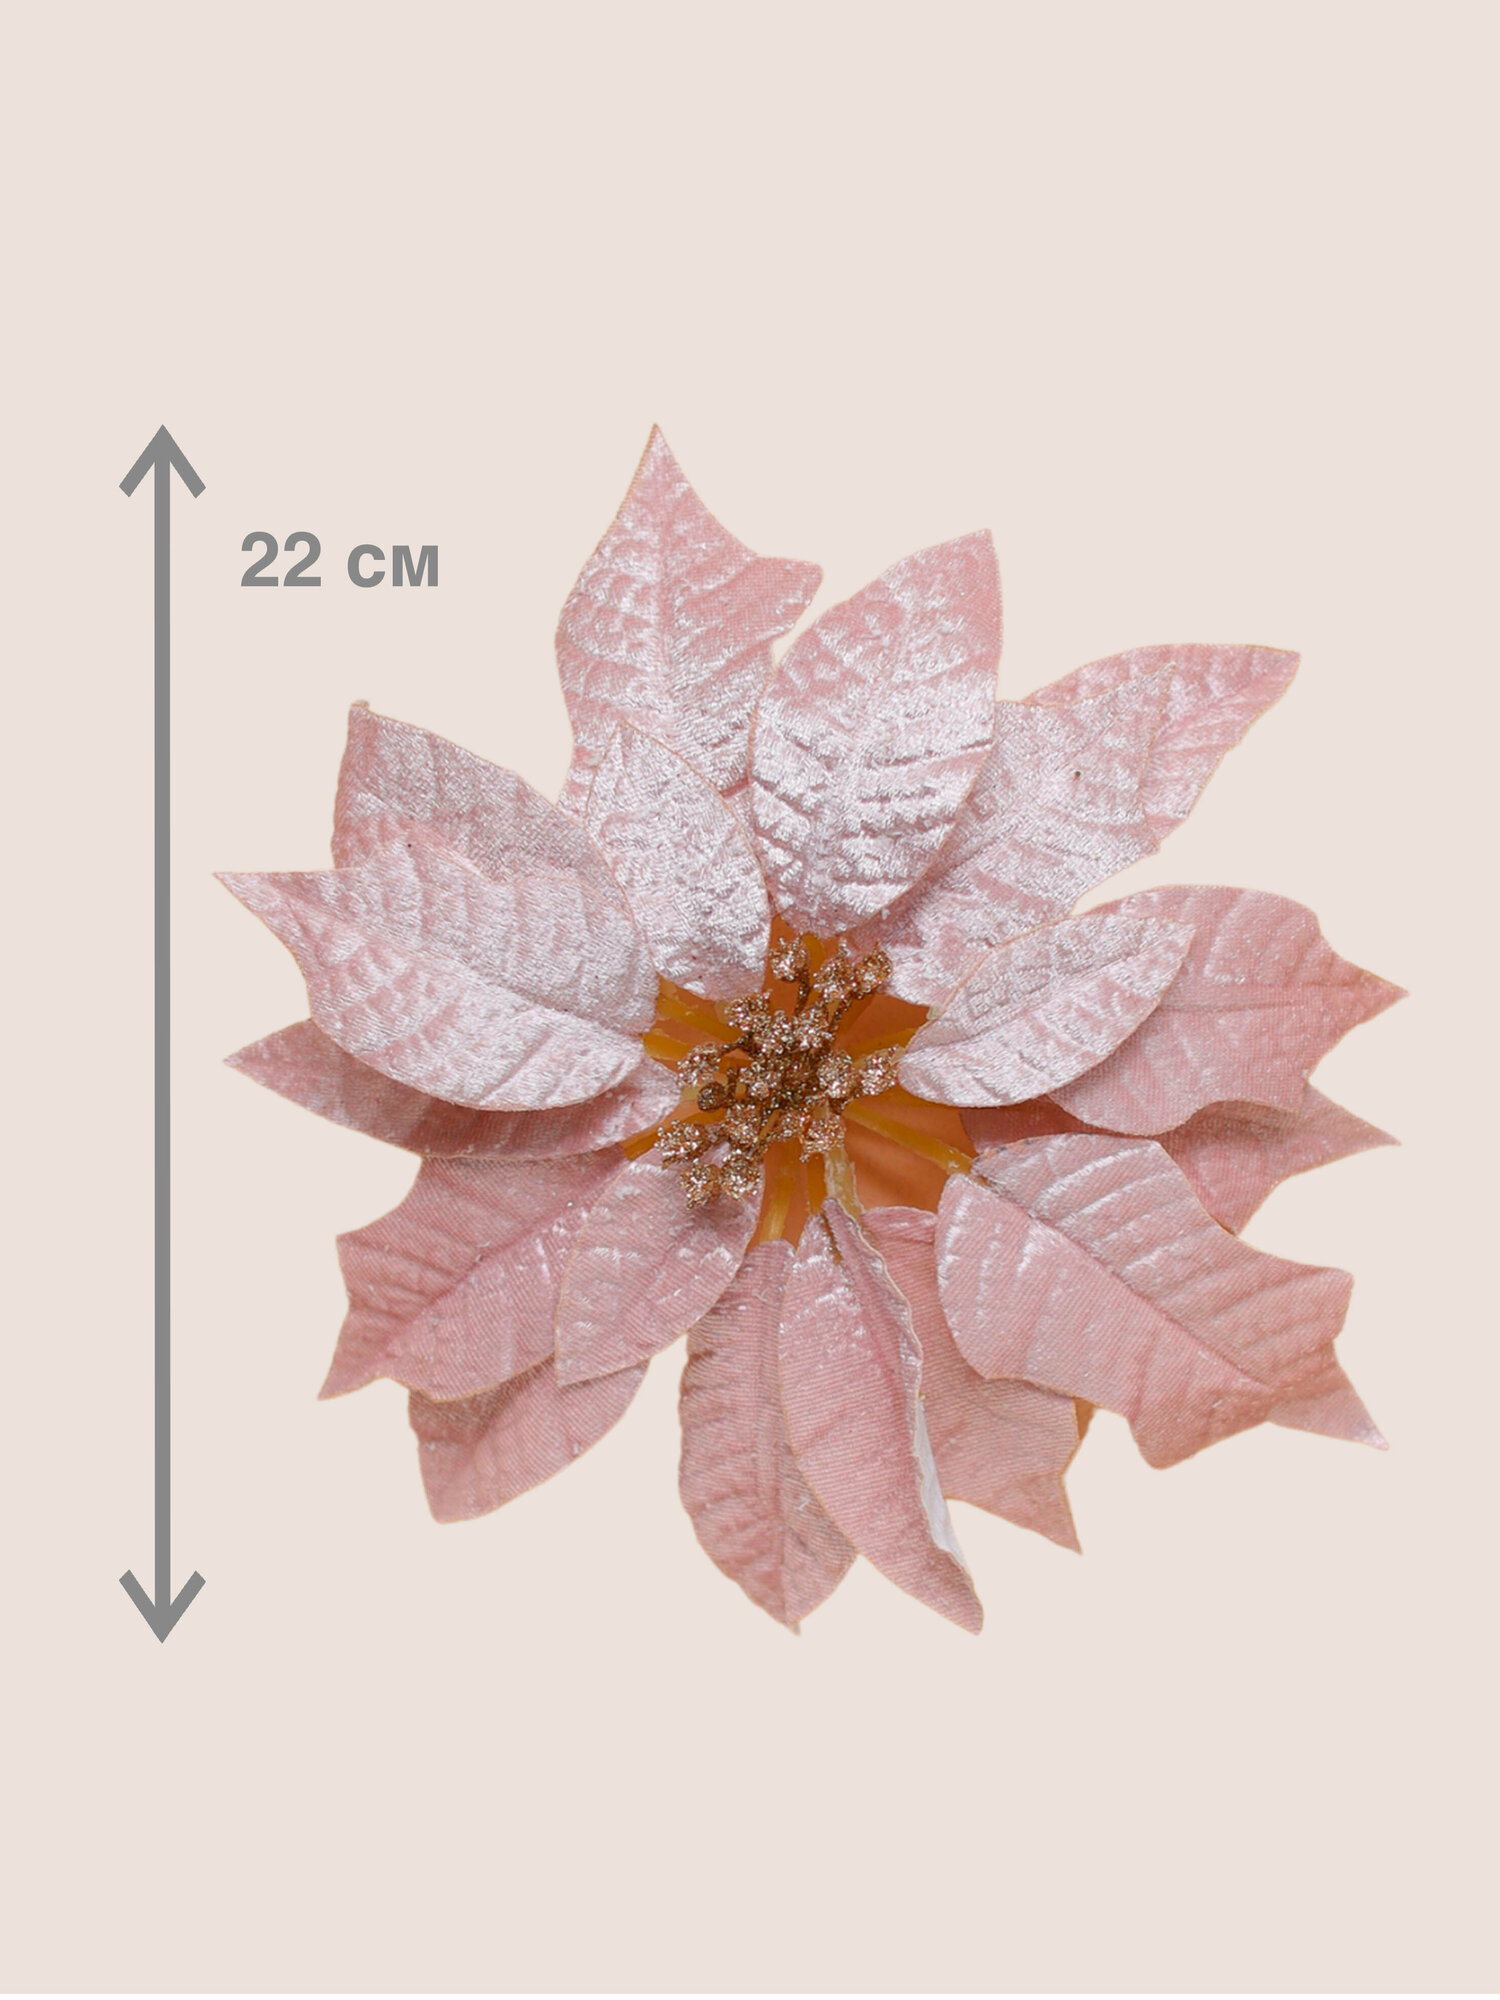 Цветок искусственный декоративный новогодний, диаметр 22 см, цвет пудровый